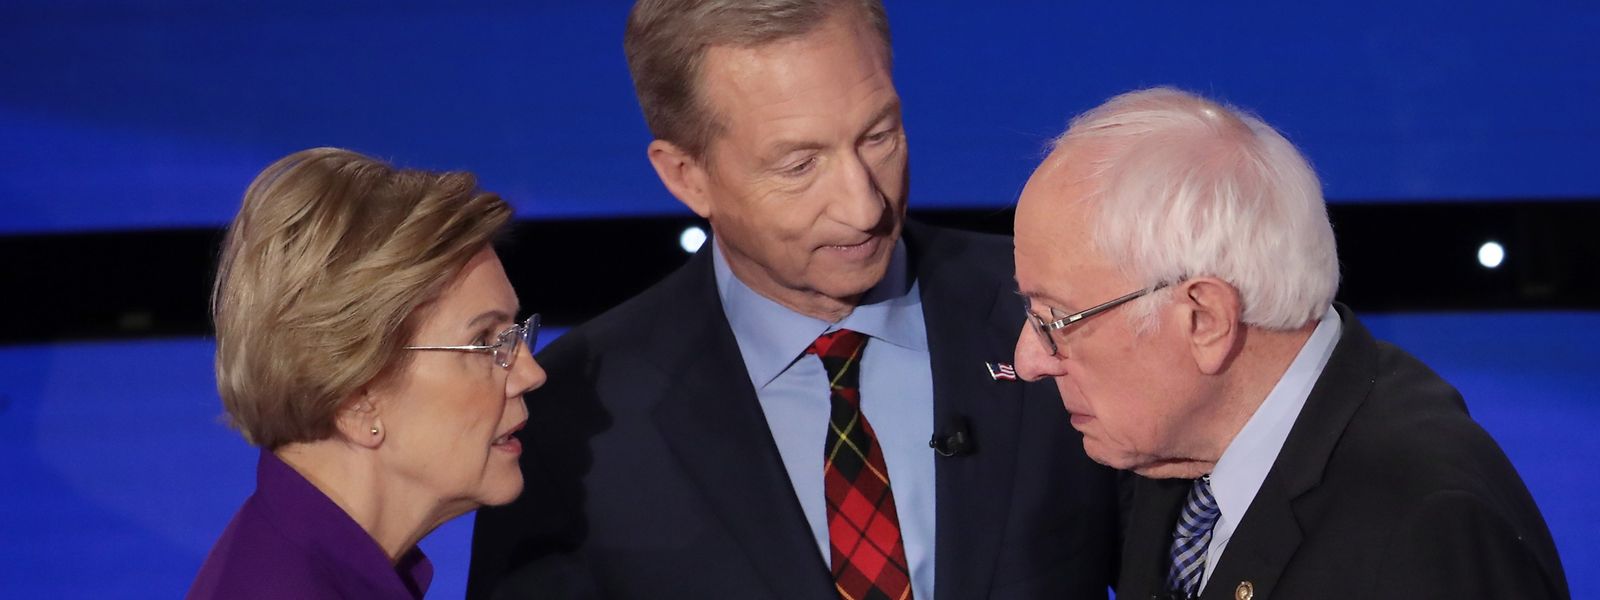 Die Senatoren Elizabeth Warren und Bernie Sanders (rechts) gerieten bei einer Fernsehdebatte aneinander.